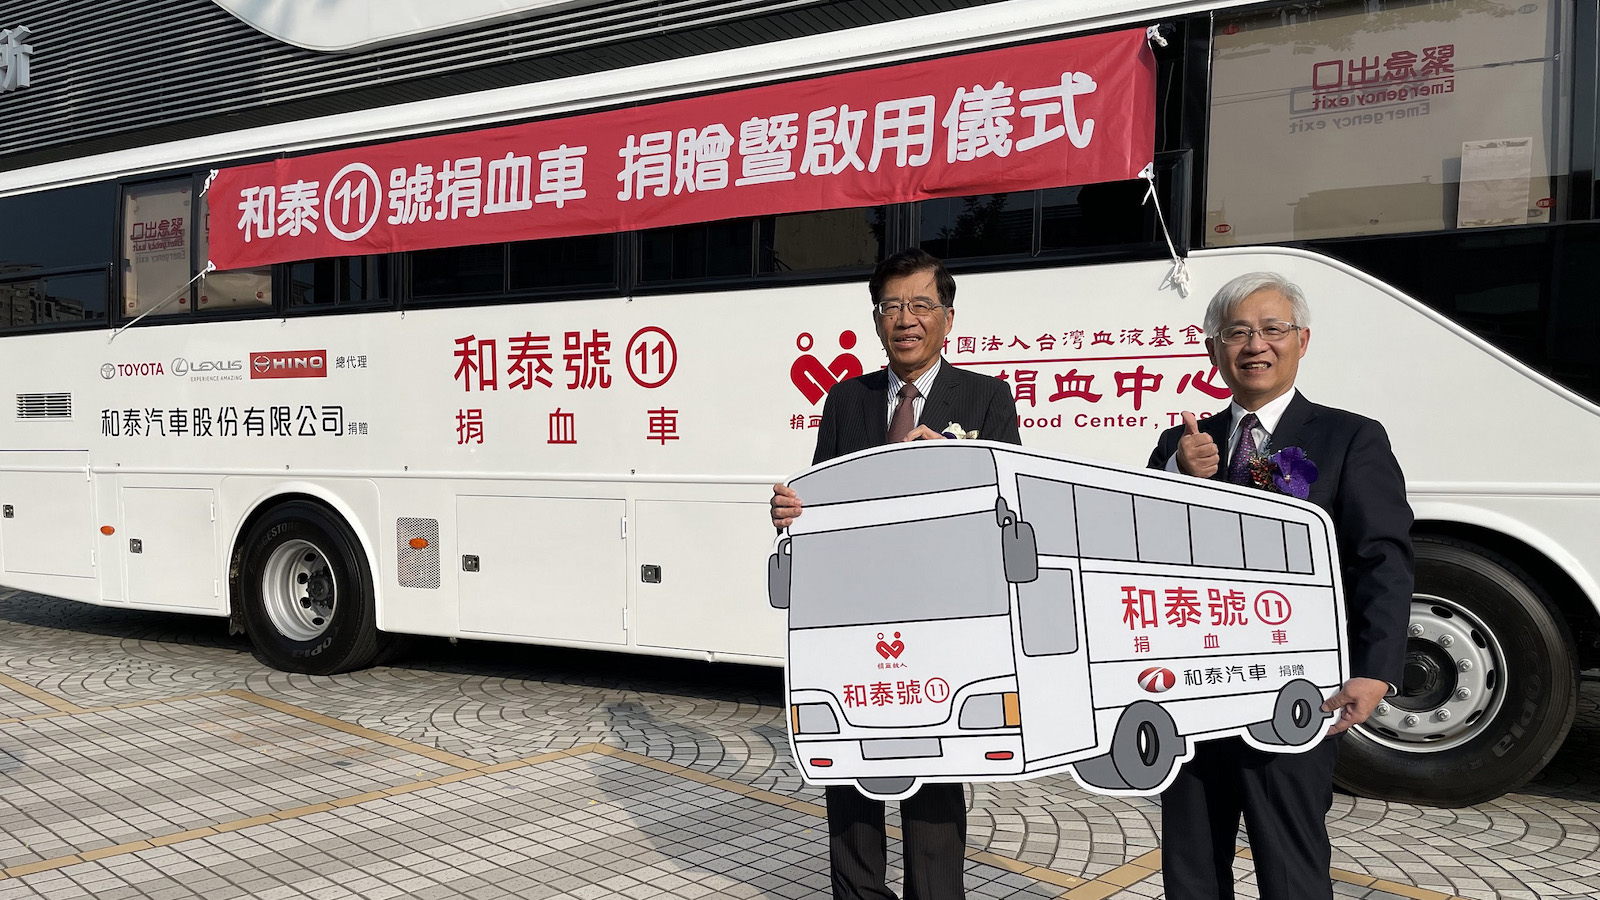 支援台灣醫療用血 和泰汽車捐贈第 11 台捐血車